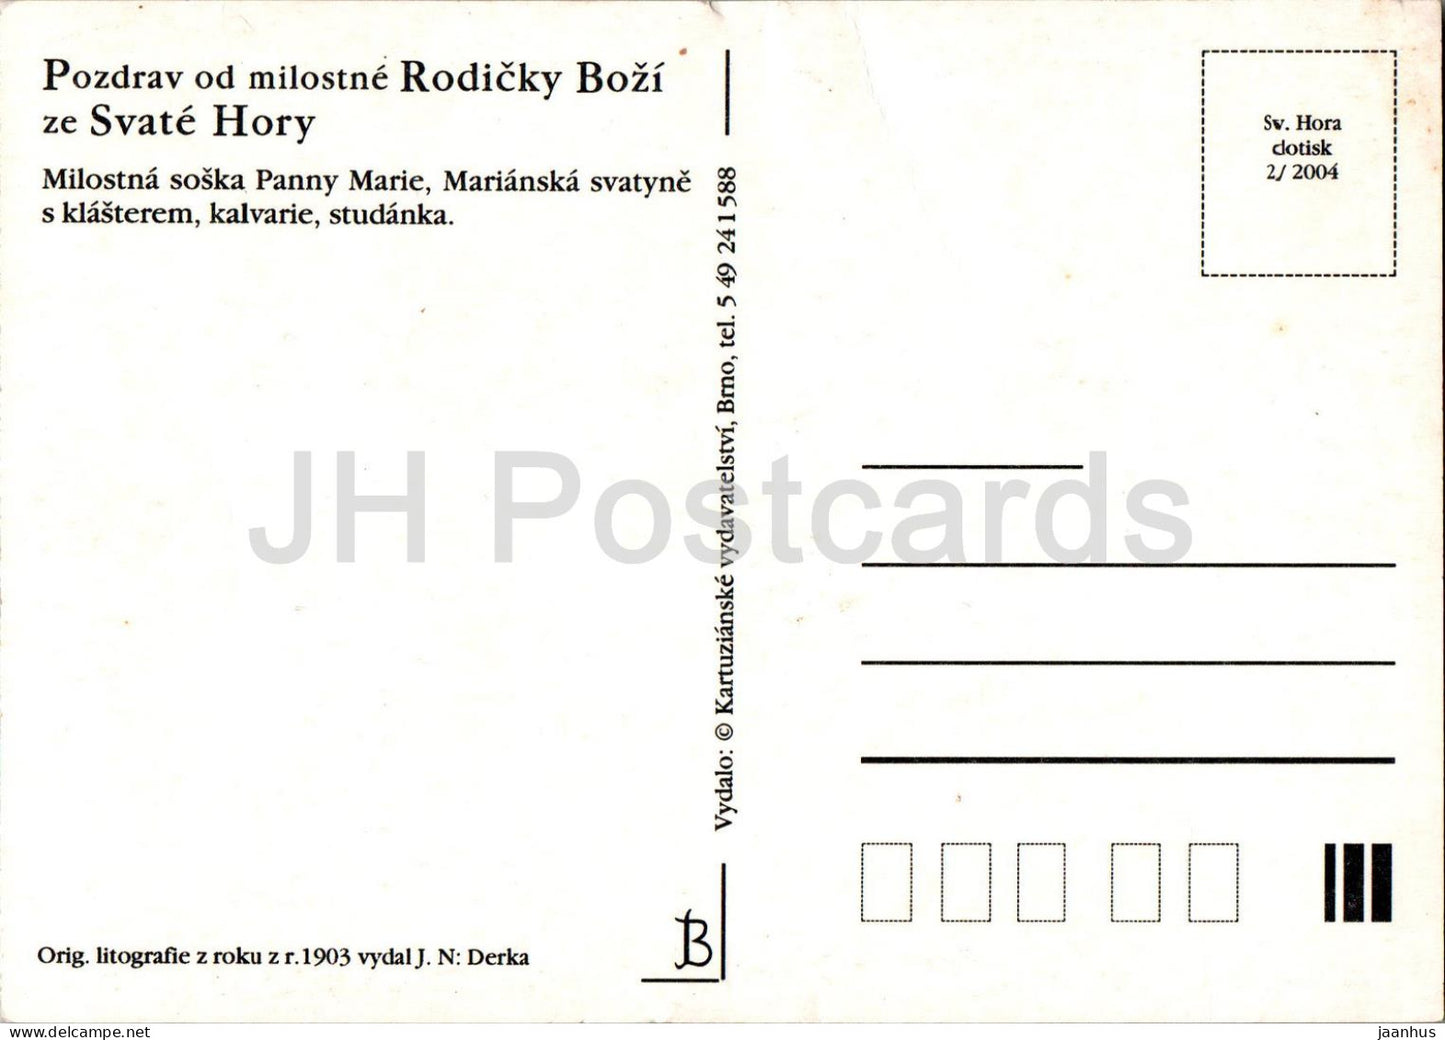 Pozdrav od milostne Rodicky Bozi - ze Svate Hory u Pribrami - REPRODUKTION! - 2004 – Tschechische Republik – unbenutzt 